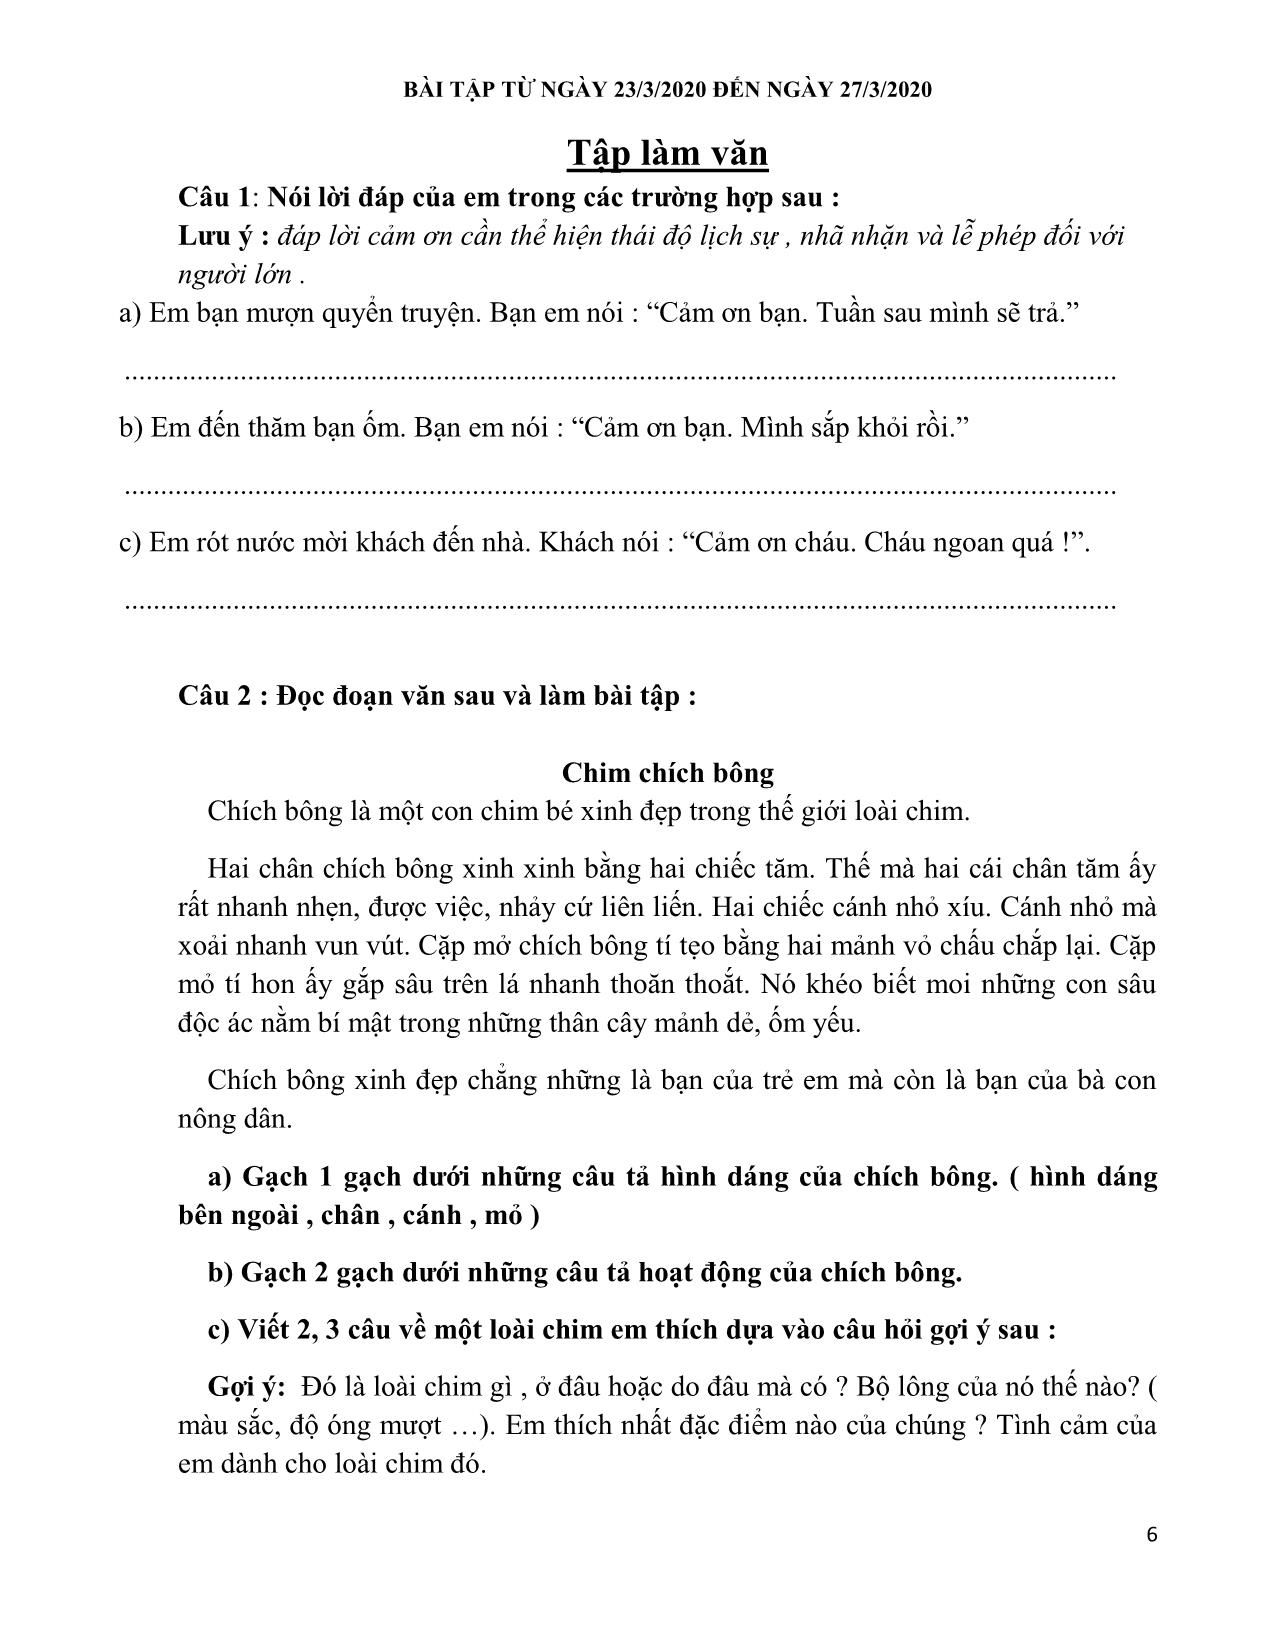 Đề cương ôn tập môn Tiếng Việt – Tuần 21: Tập đọc chim sơn ca và bông cúc trắng trang 6